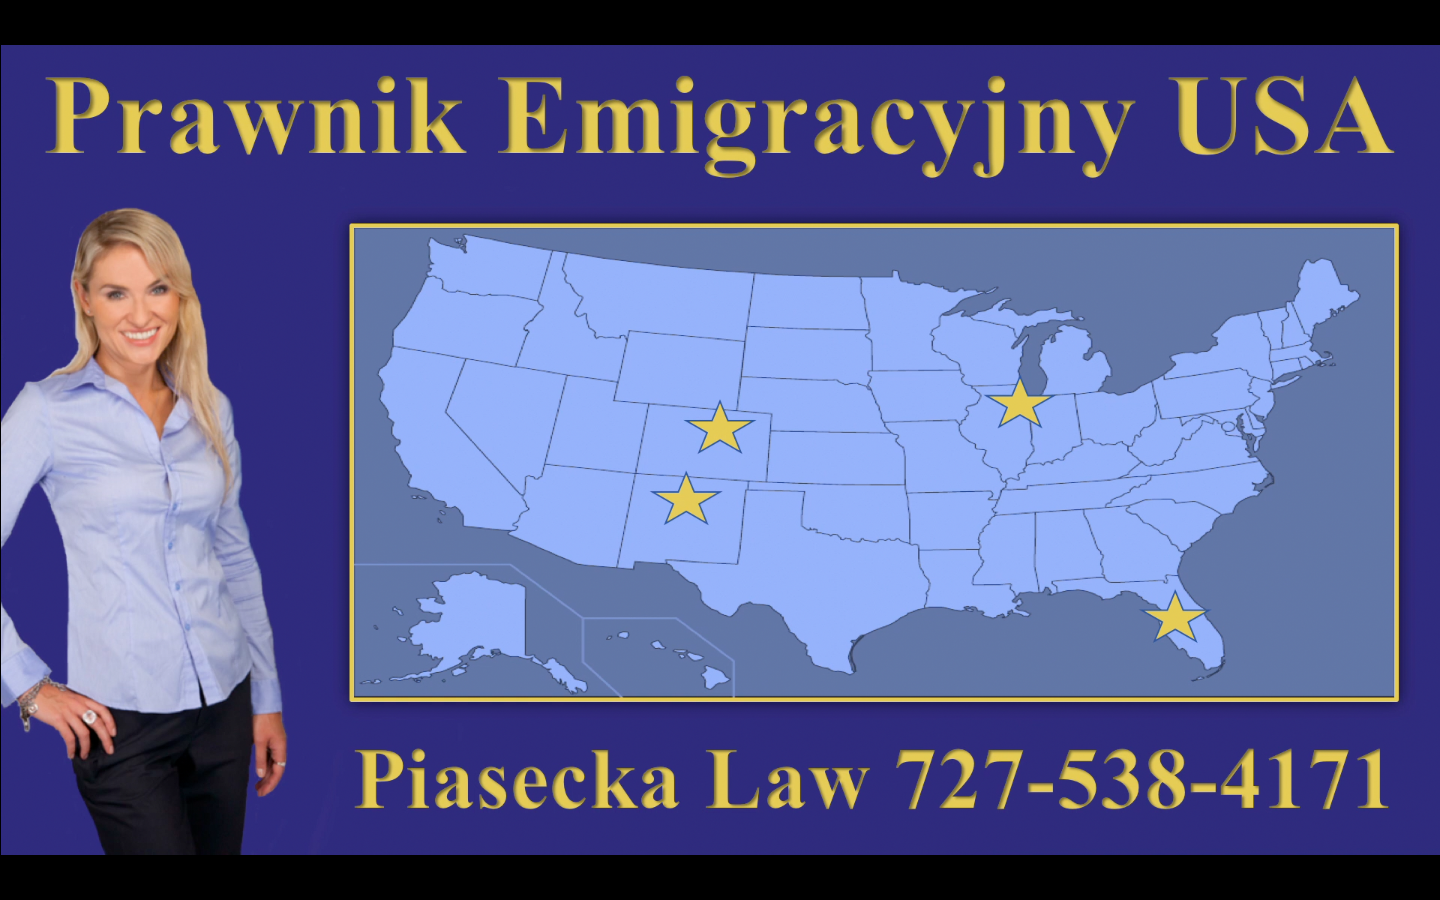 Prawnik Emigracyjny USA Piasecka Law 727-538-4171 Map